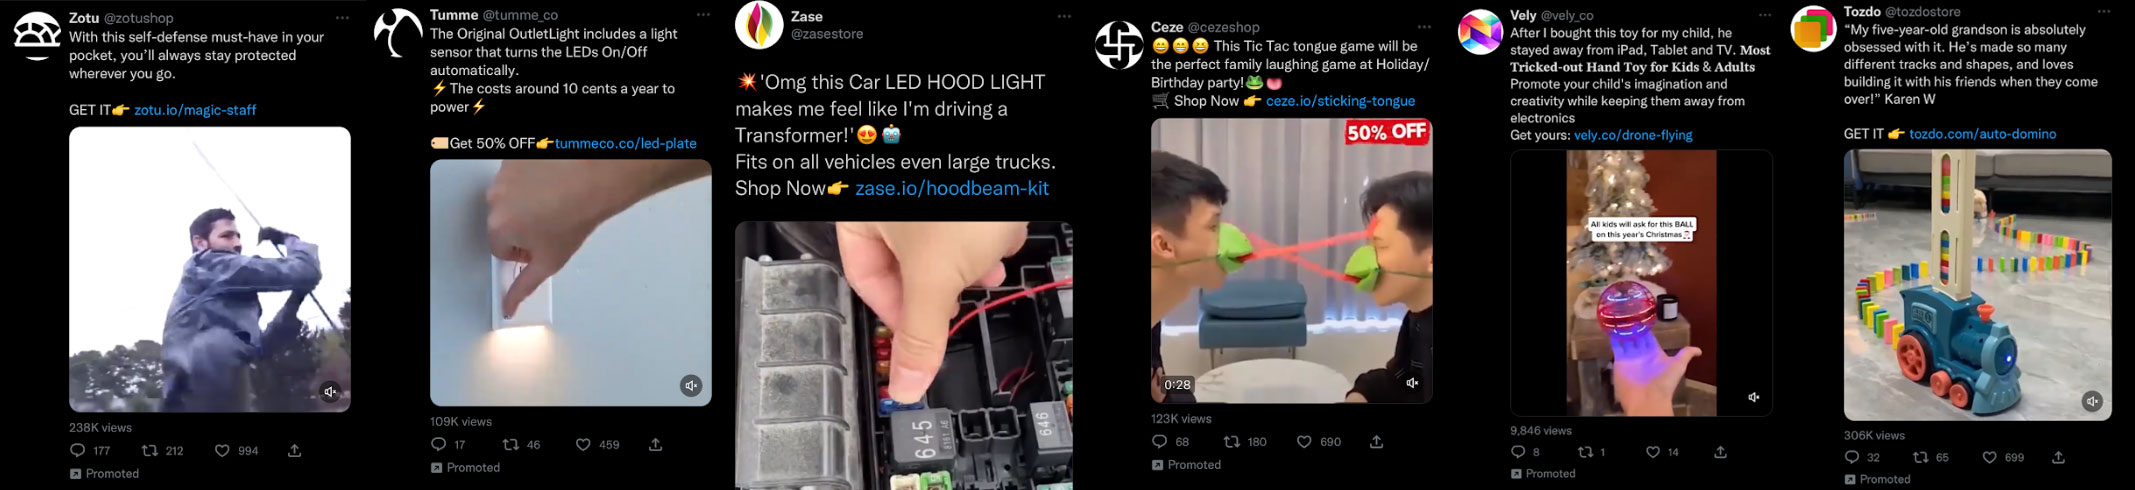 China ads on Twitter.